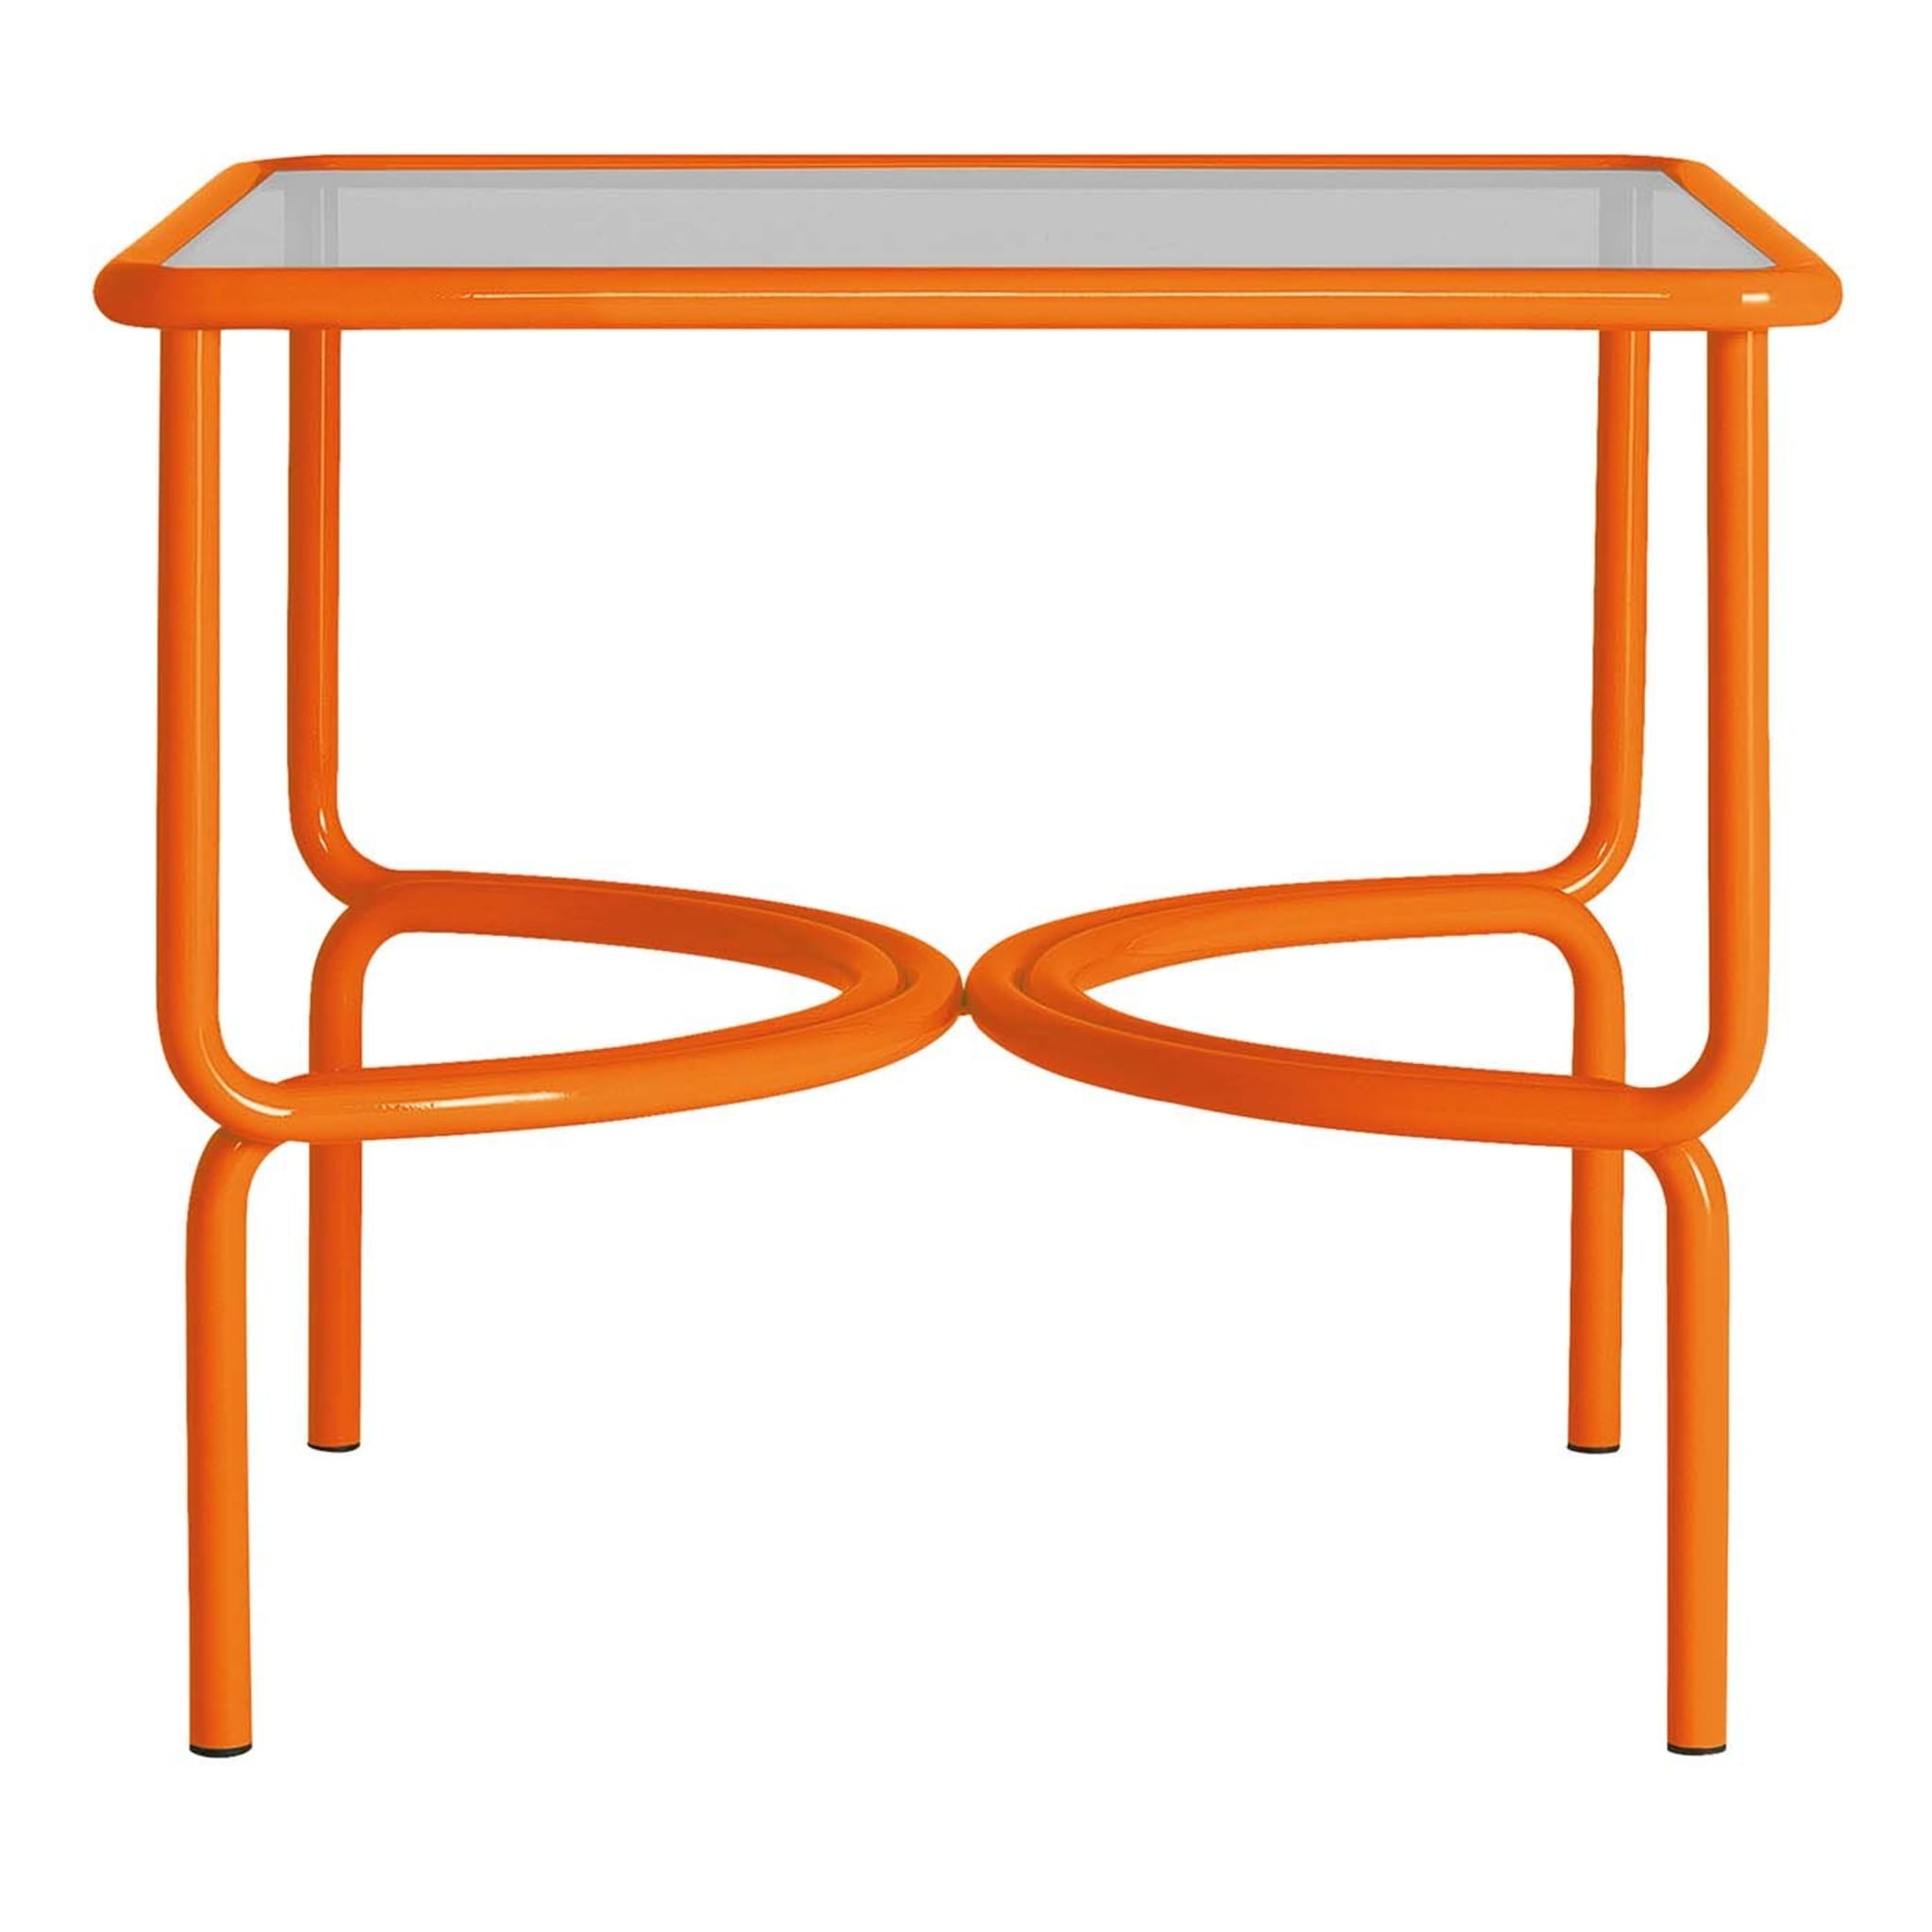 Locus Solus Orange Bistro Table by Gae Aulenti - Main view